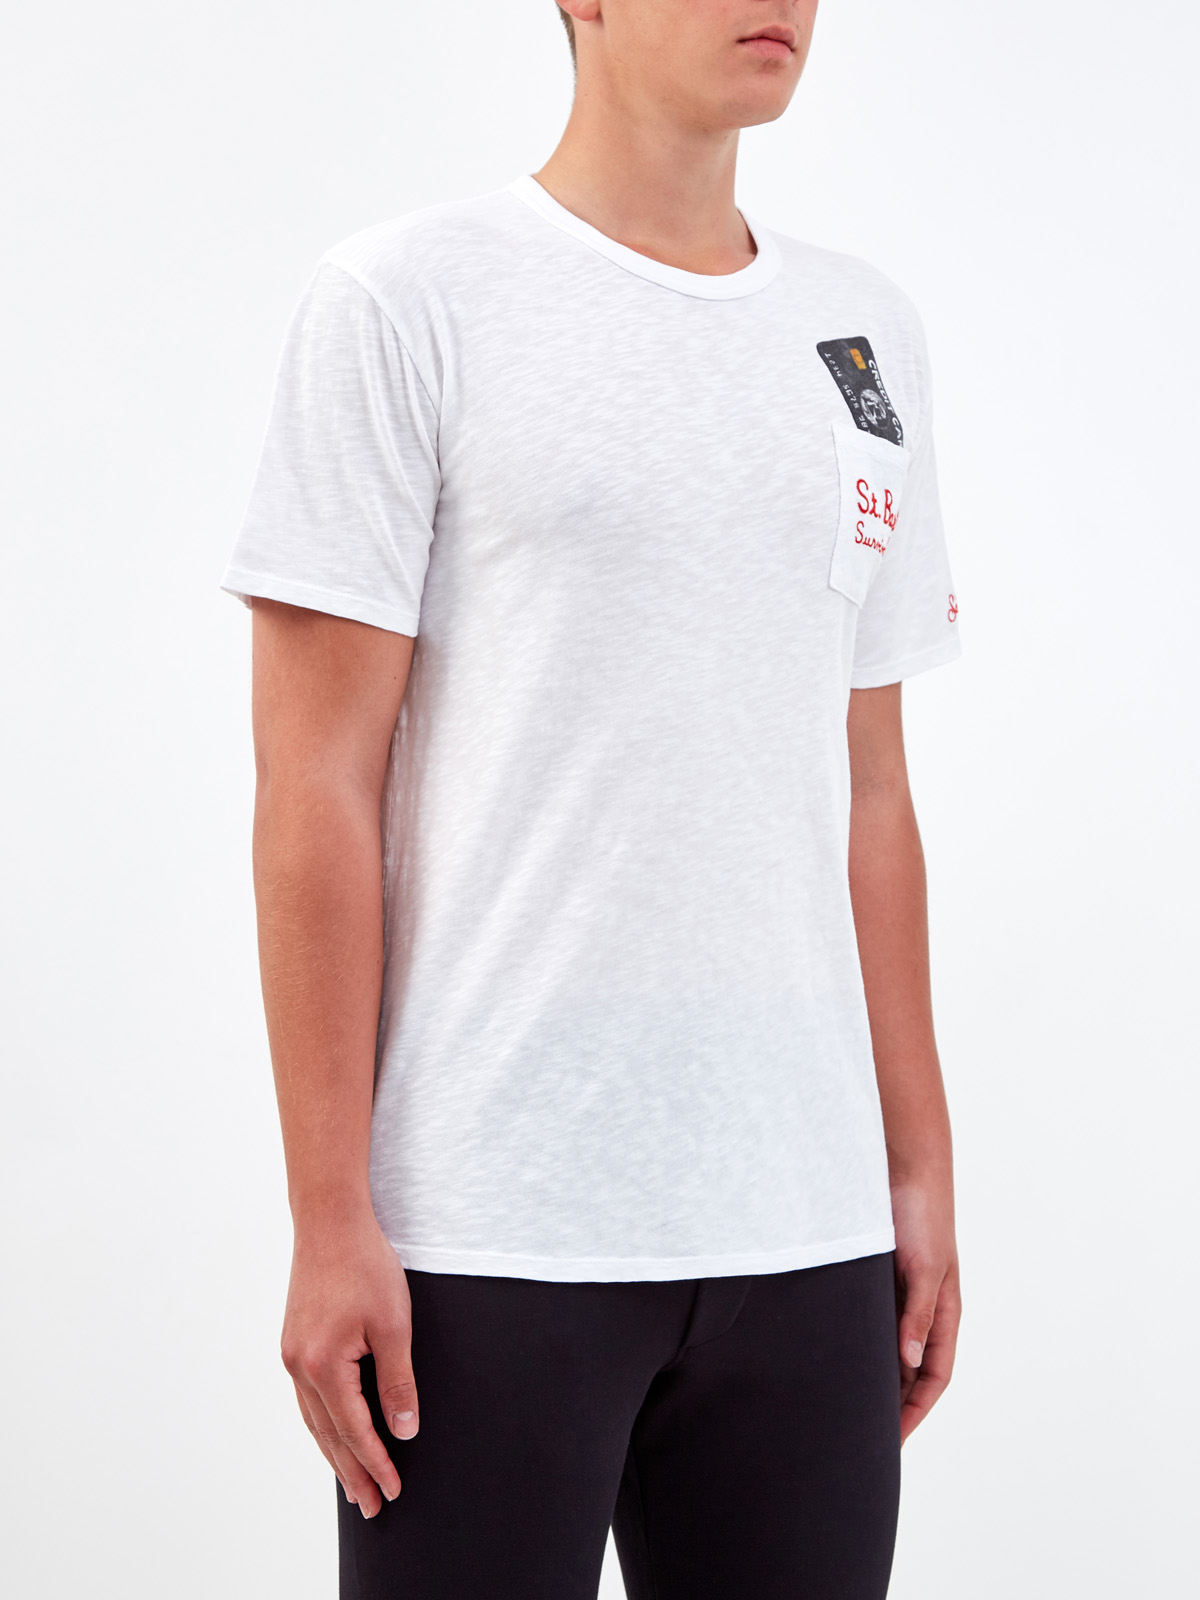 Легкая футболка из хлопка с накладным карманом и принтом MC2 SAINT BARTH, цвет белый, размер 2XL - фото 3